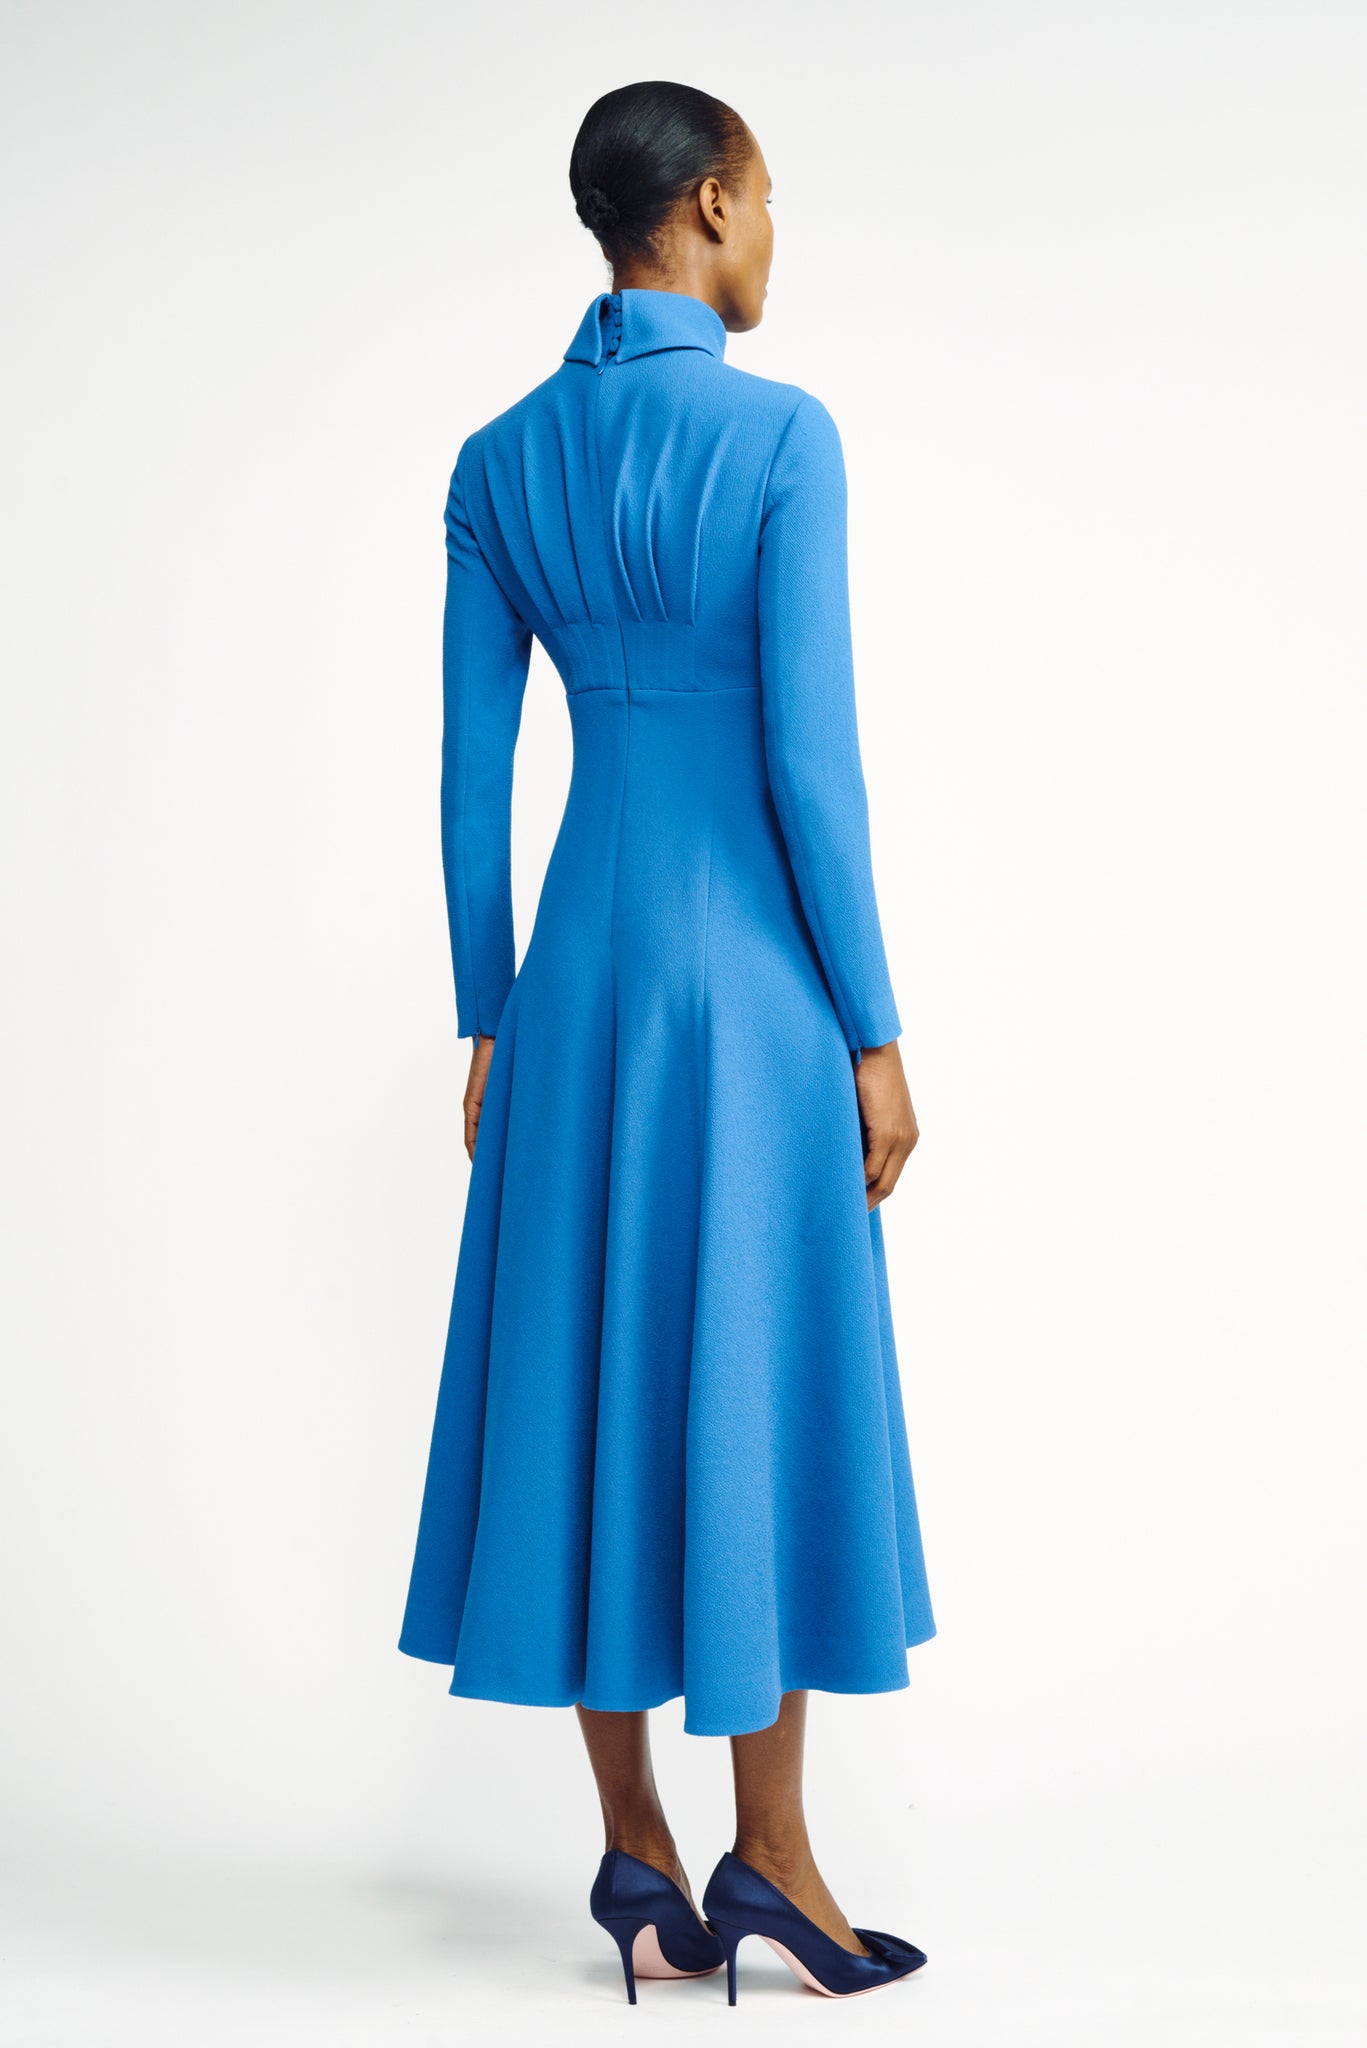 Oakley Dress | Blue Long Sleeve High Neck Dress | Emilia Wickstead